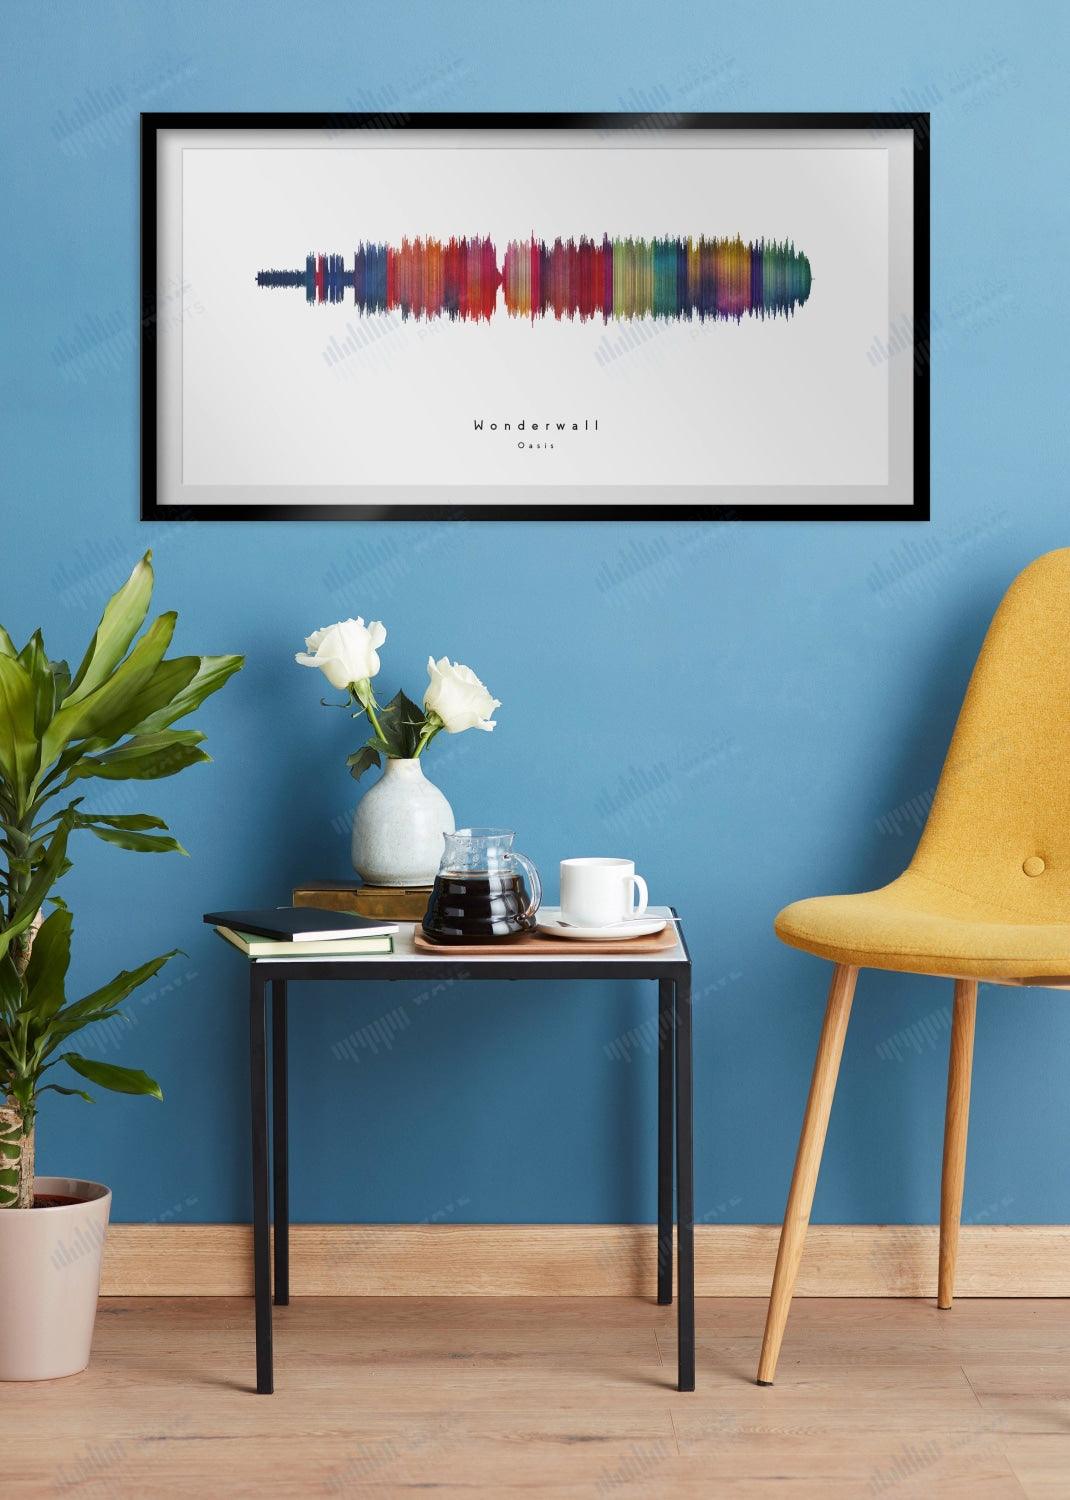 Wonderwall by Oasis - Visual Wave Prints